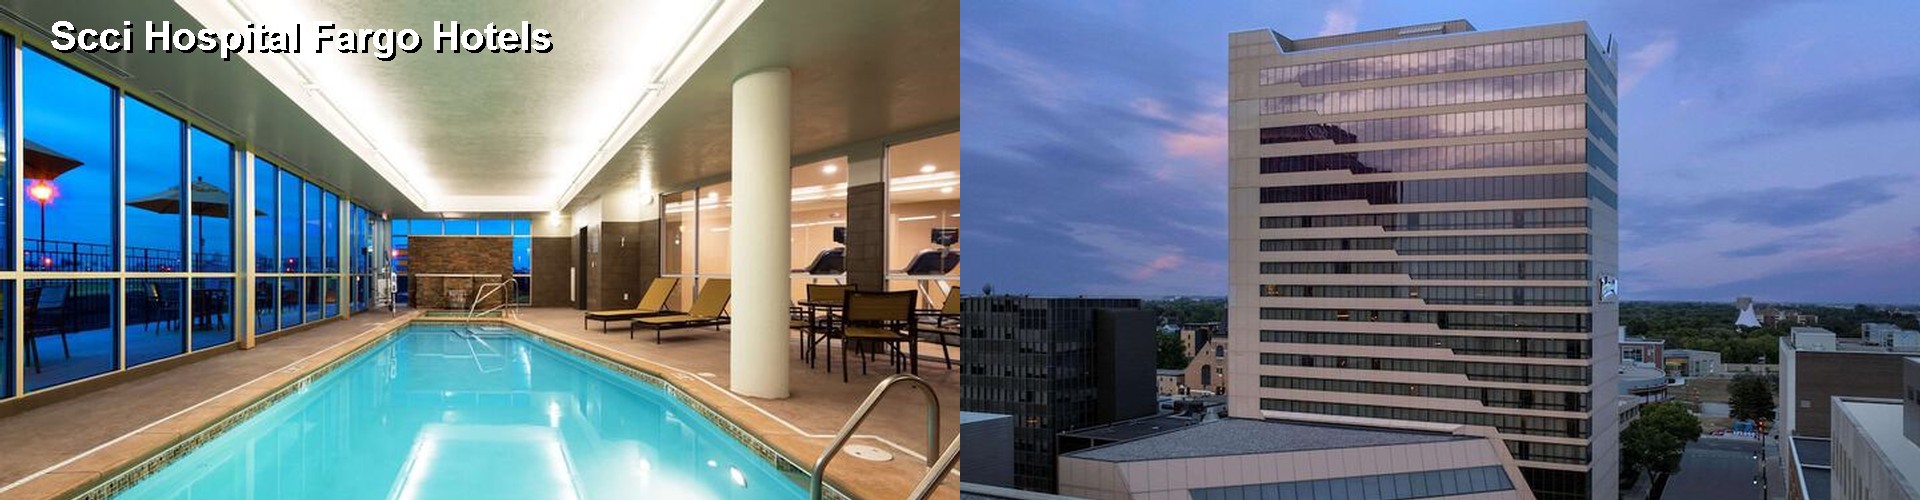 4 Best Hotels near Scci Hospital Fargo